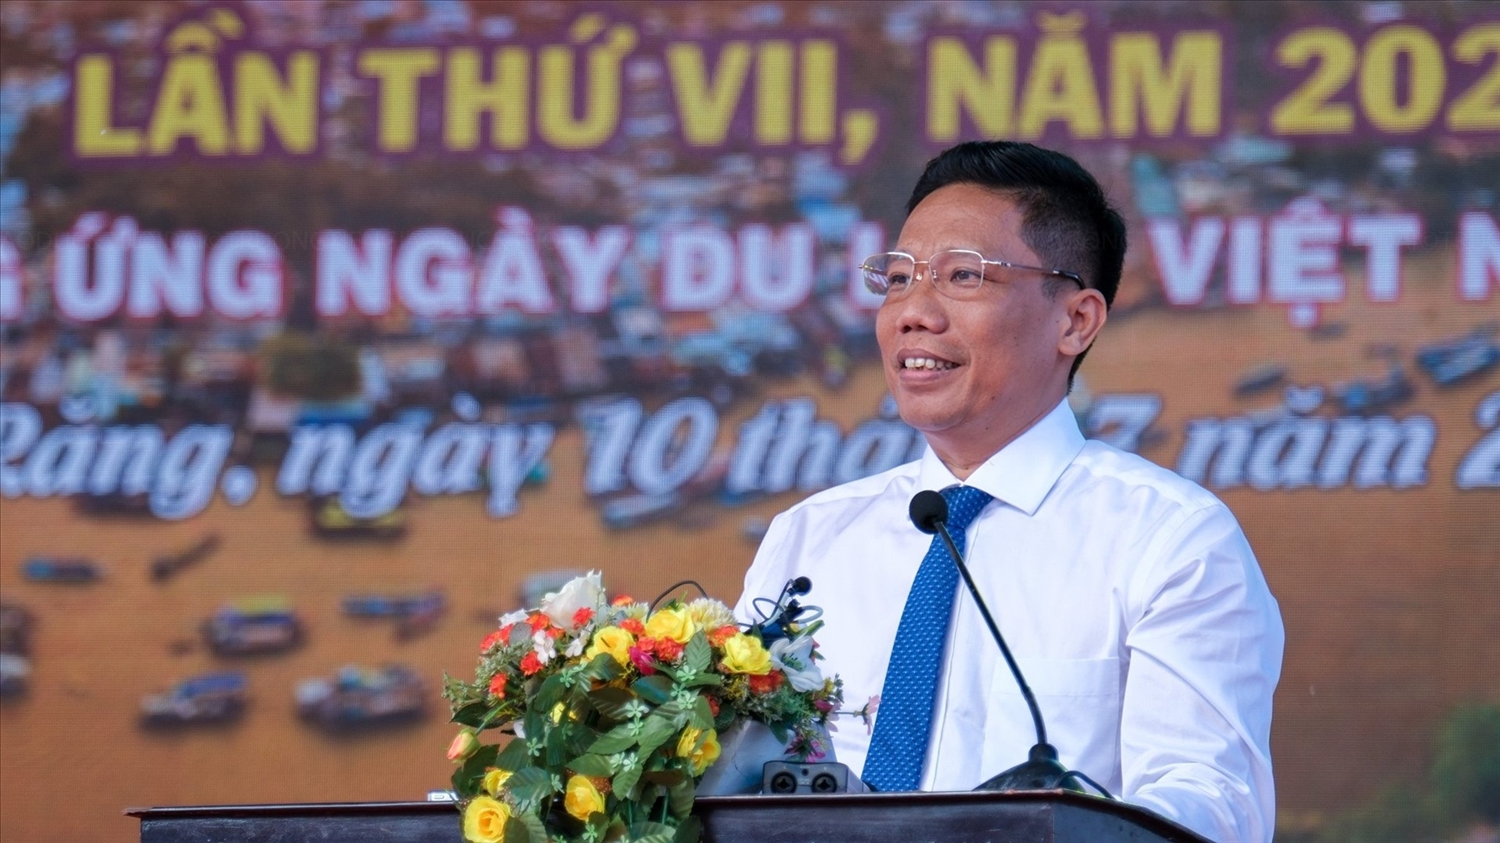 Ông Nguyễn Thực Hiện, Phó chủ tịch UBND TP Cần Thơ phát biểu tại Lễ khai mạc